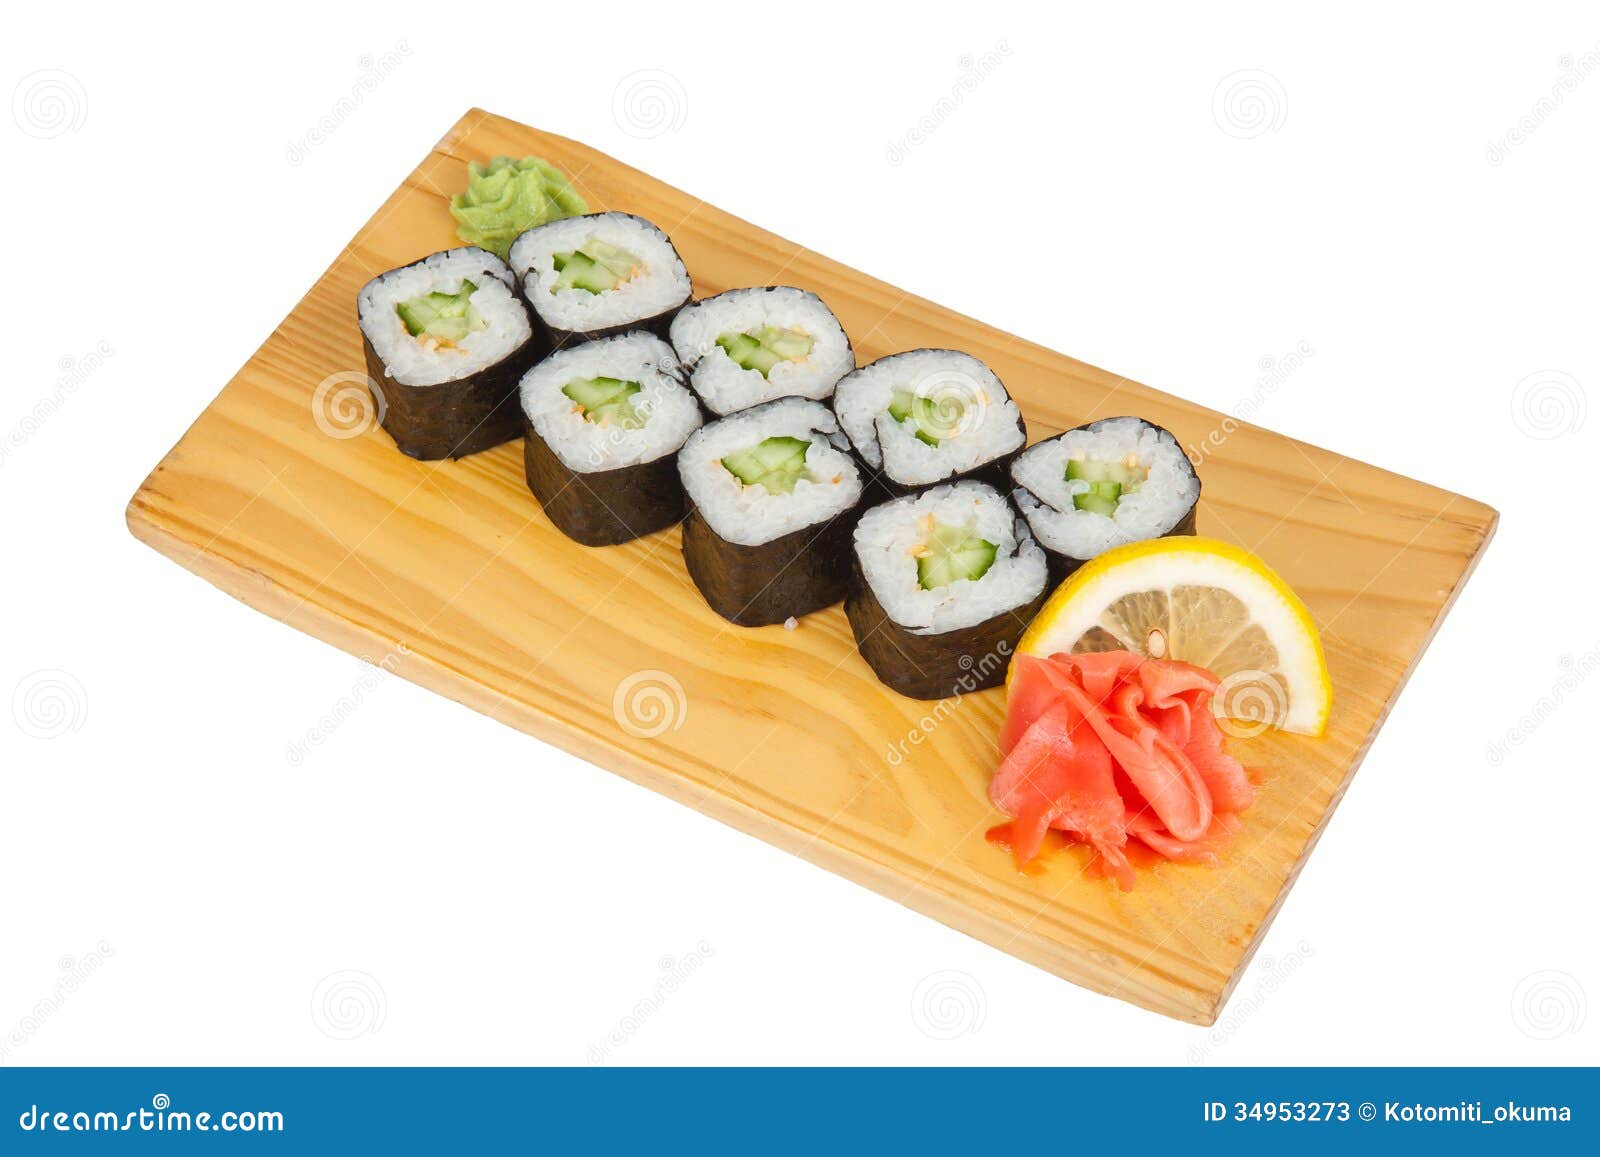 寿司maki用黄瓜 库存图片. 图片 包括有 苹果酱, 正餐, 准备, 聚会所, 海草, 原始, 日语, 查出 - 53963481